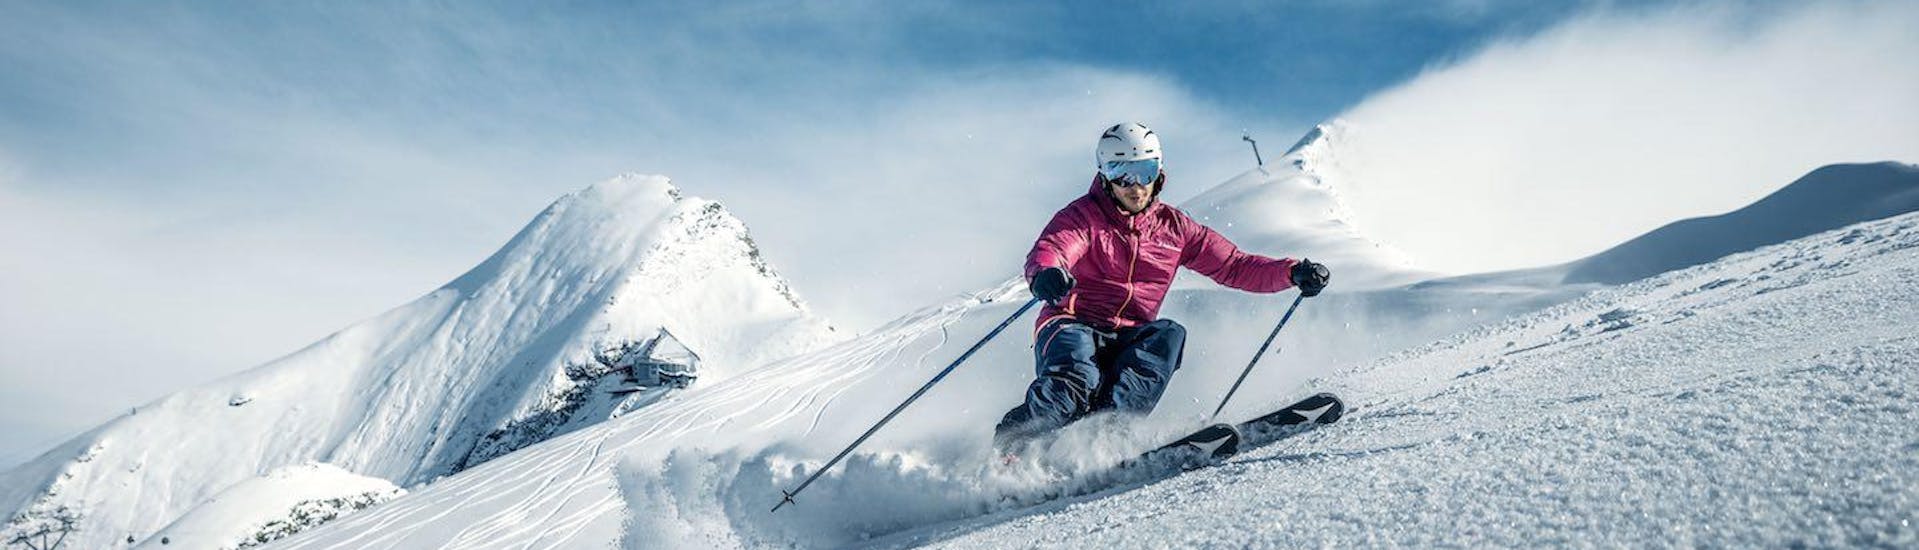 Clases de esquí para adultos para principiantes.